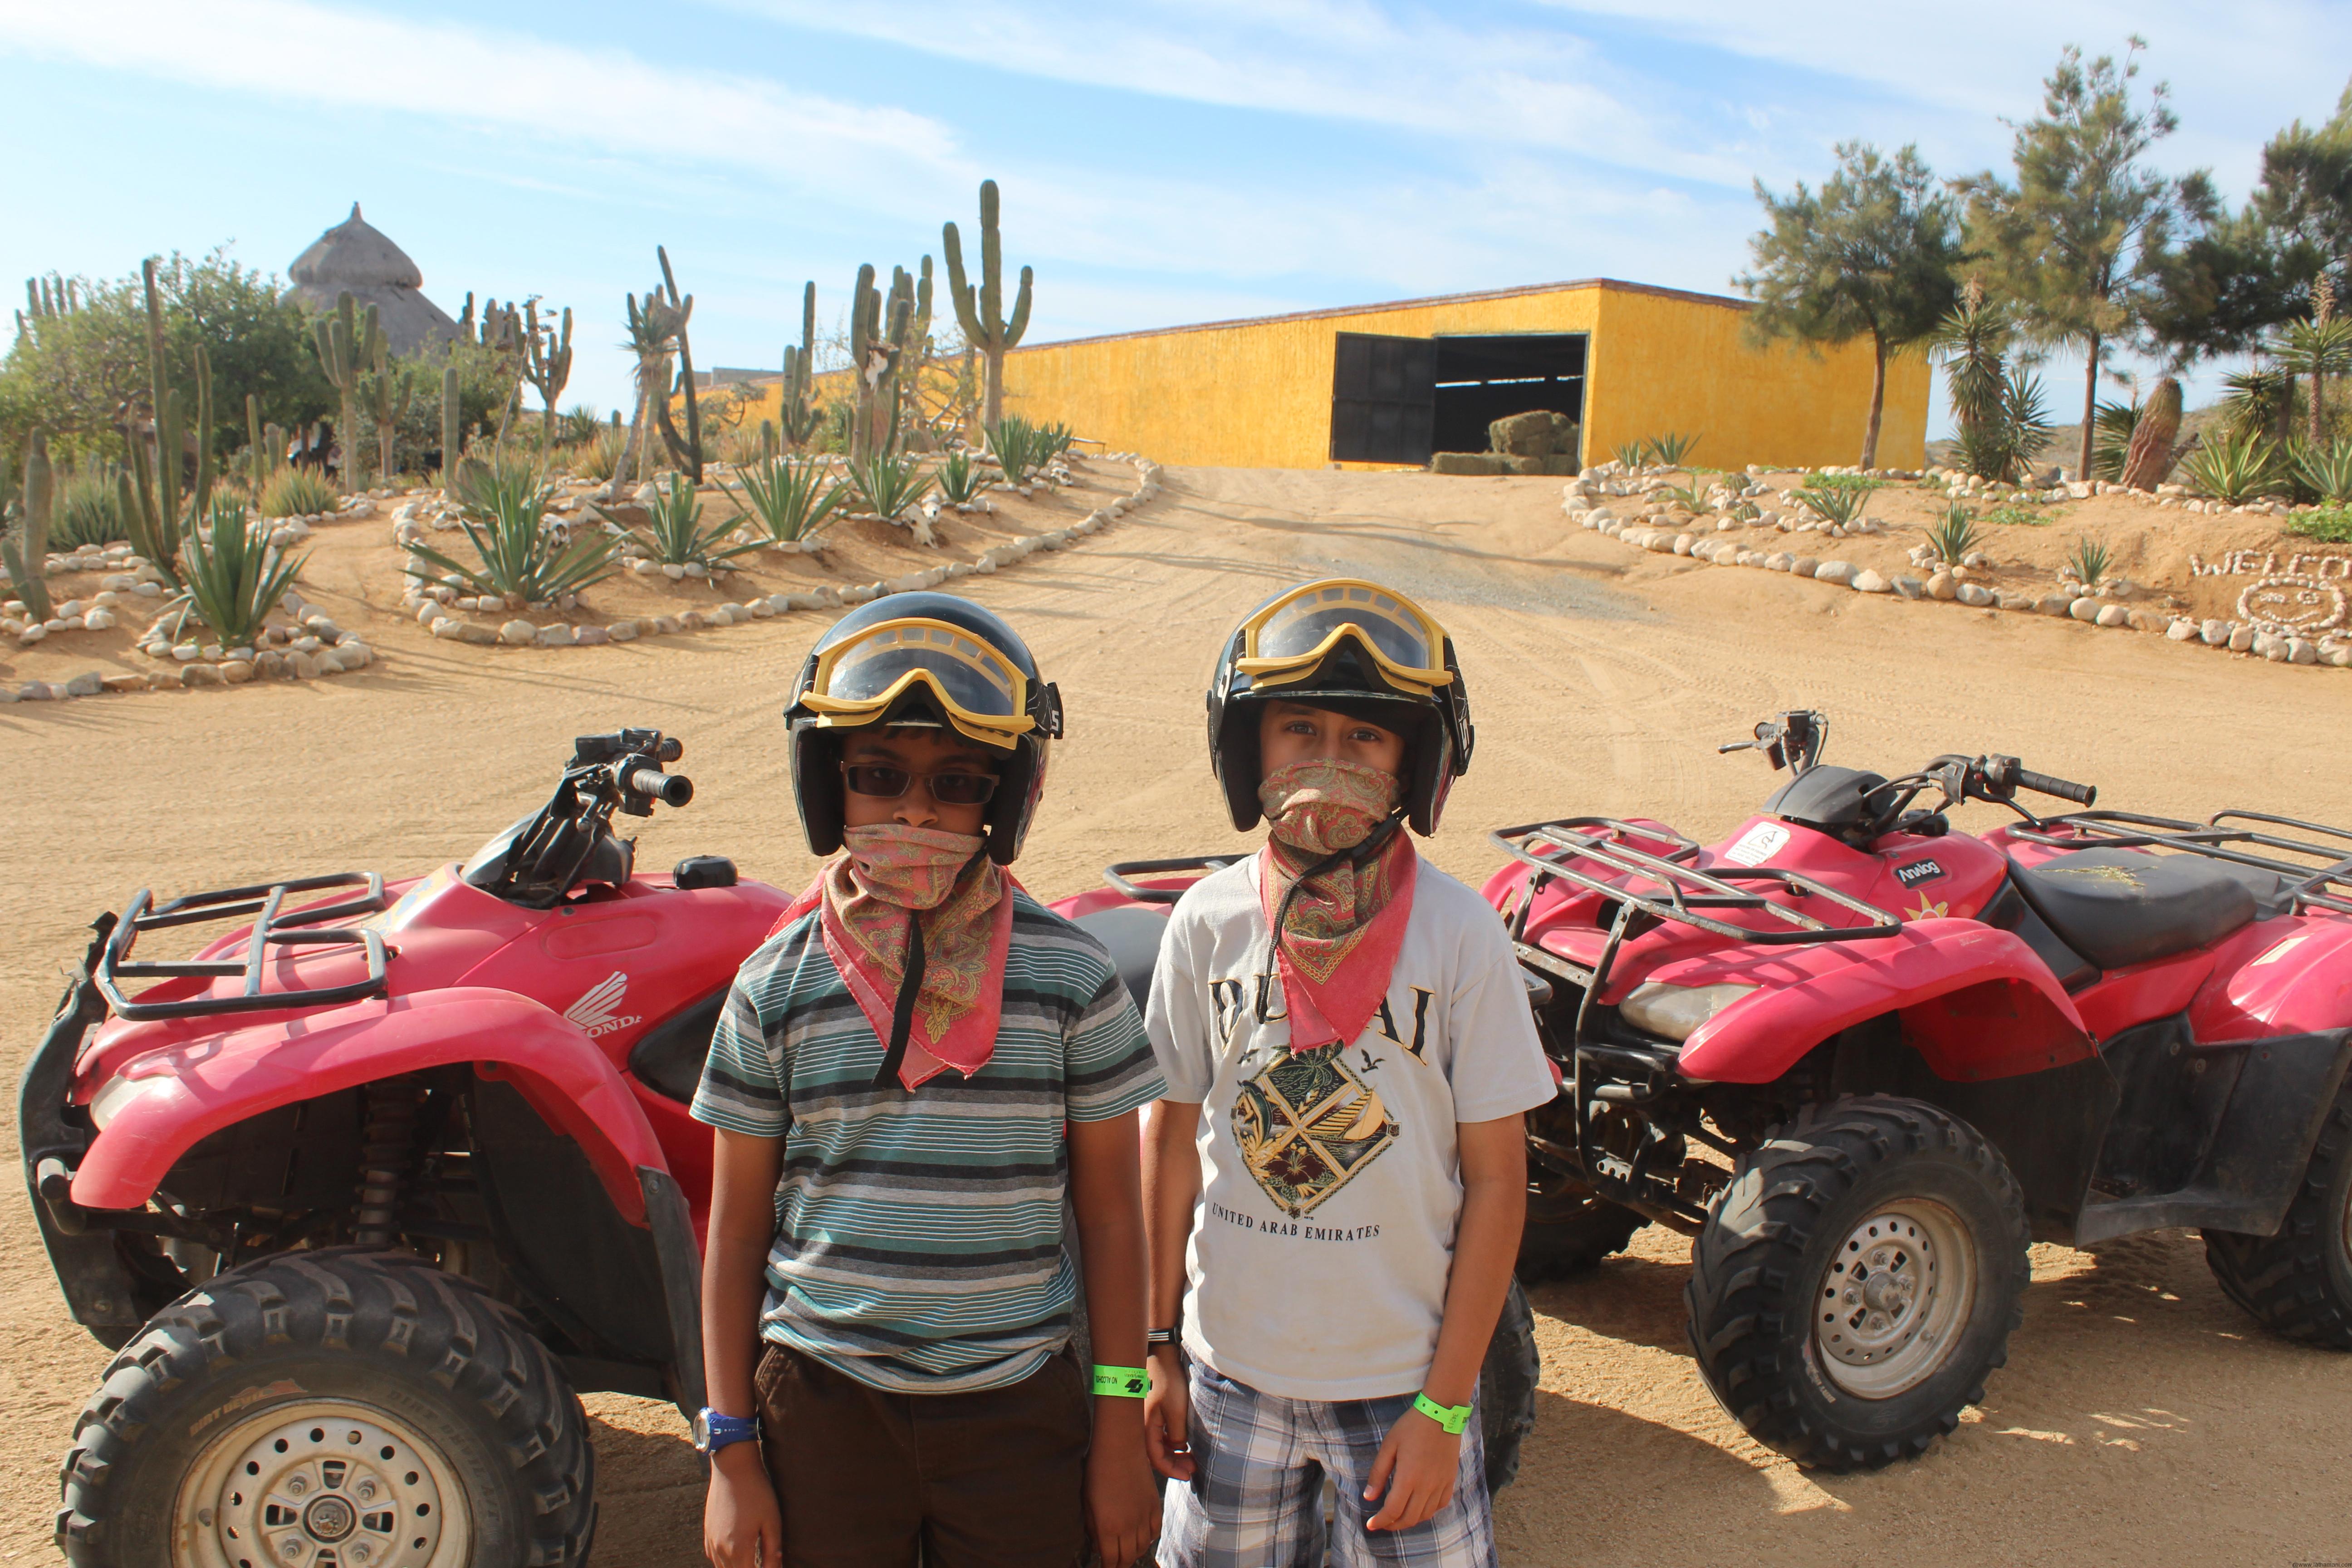 Arvind & Sooraj all set to ride the ATV